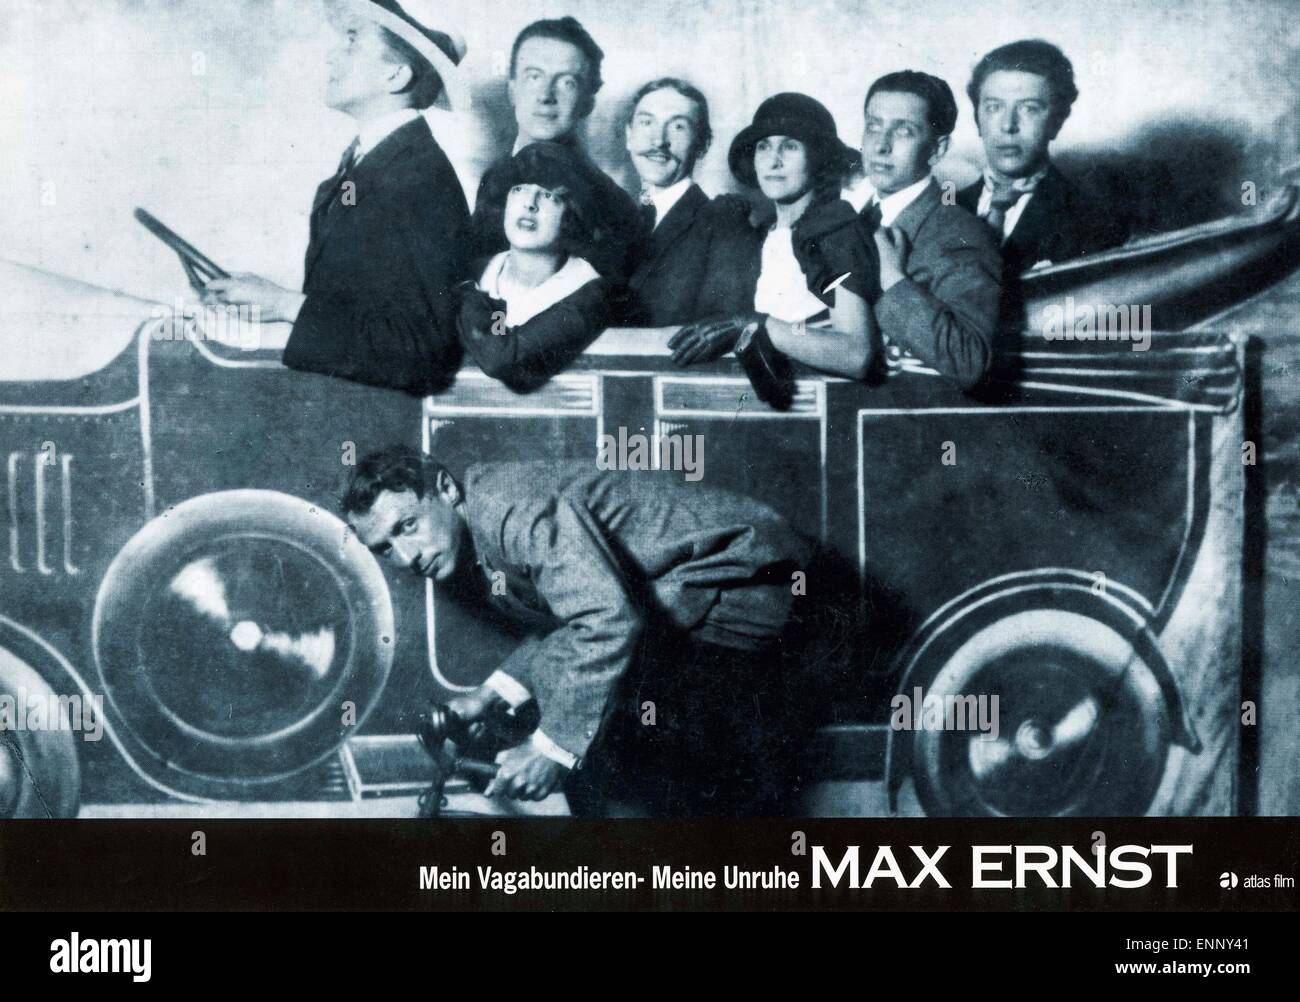 Max Ernst: Mein Vagabundieren - Meine Unruhe, Deutschland 1991, Regie: Peter Schamoni, Darsteller: Max Morise, Max Ernst, Simone Stock Photo